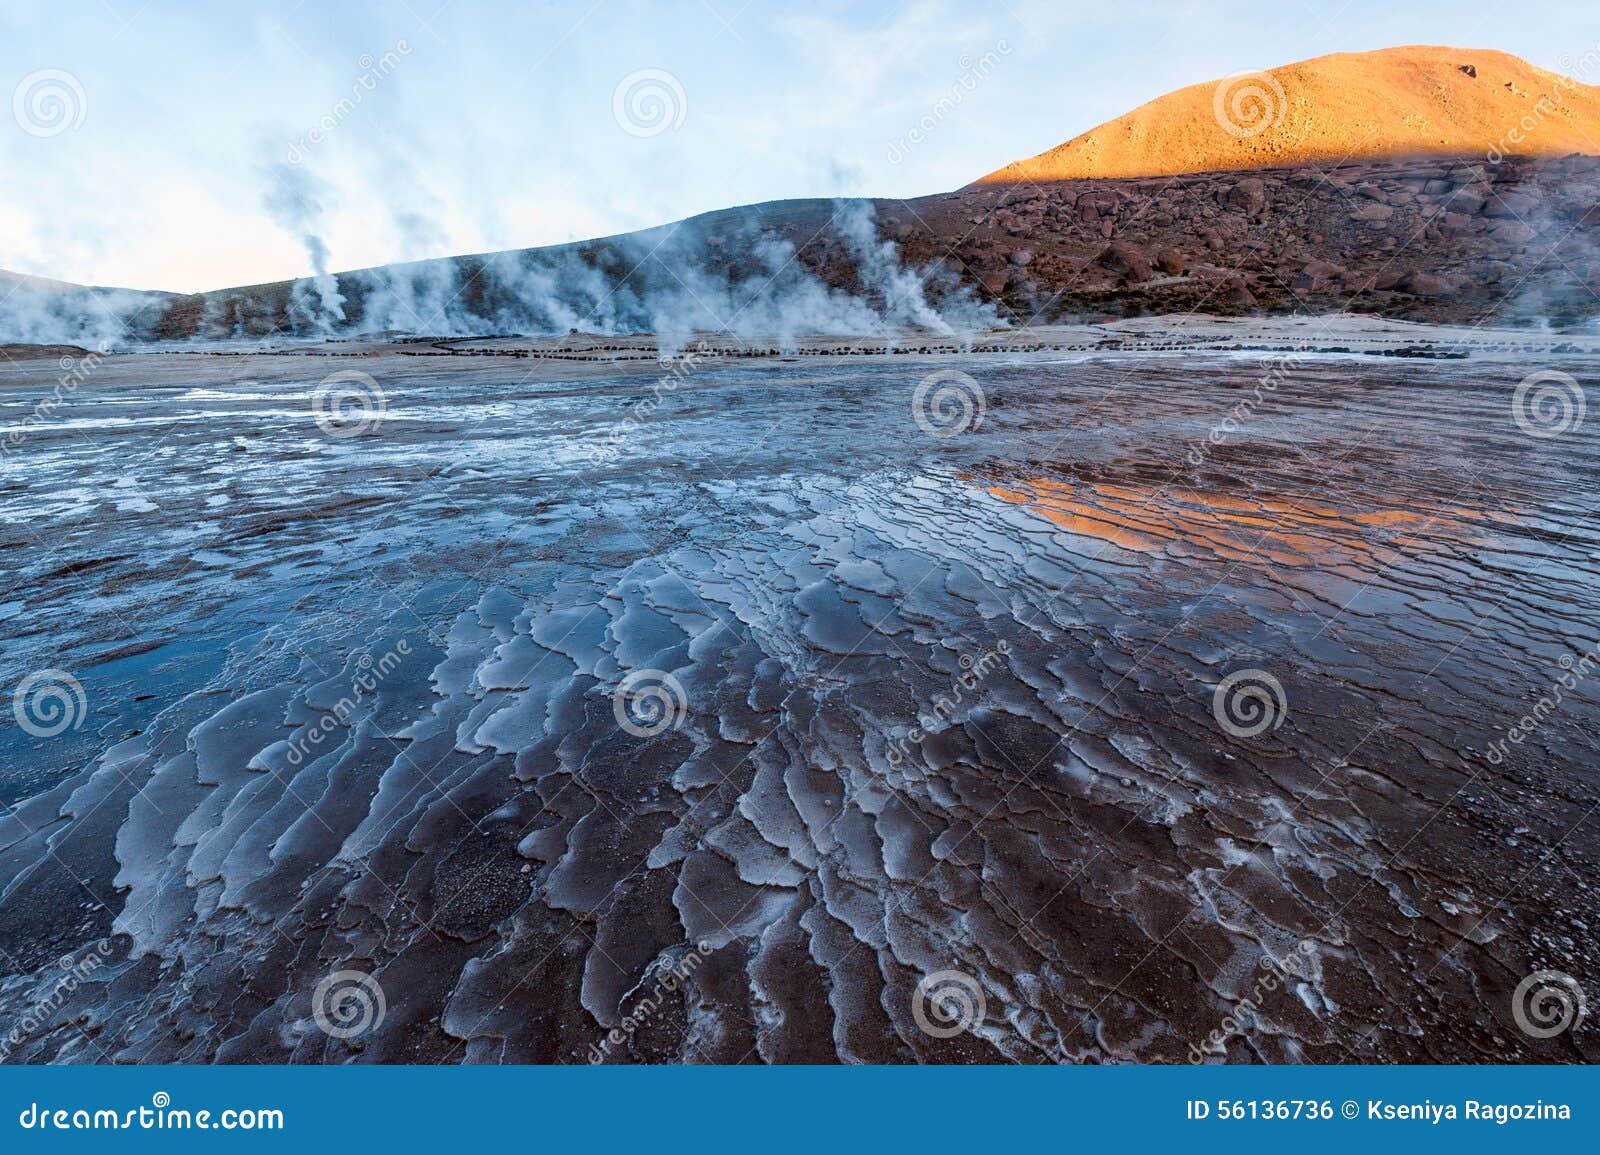 valley geysers at el tatio, northern chile, atacama